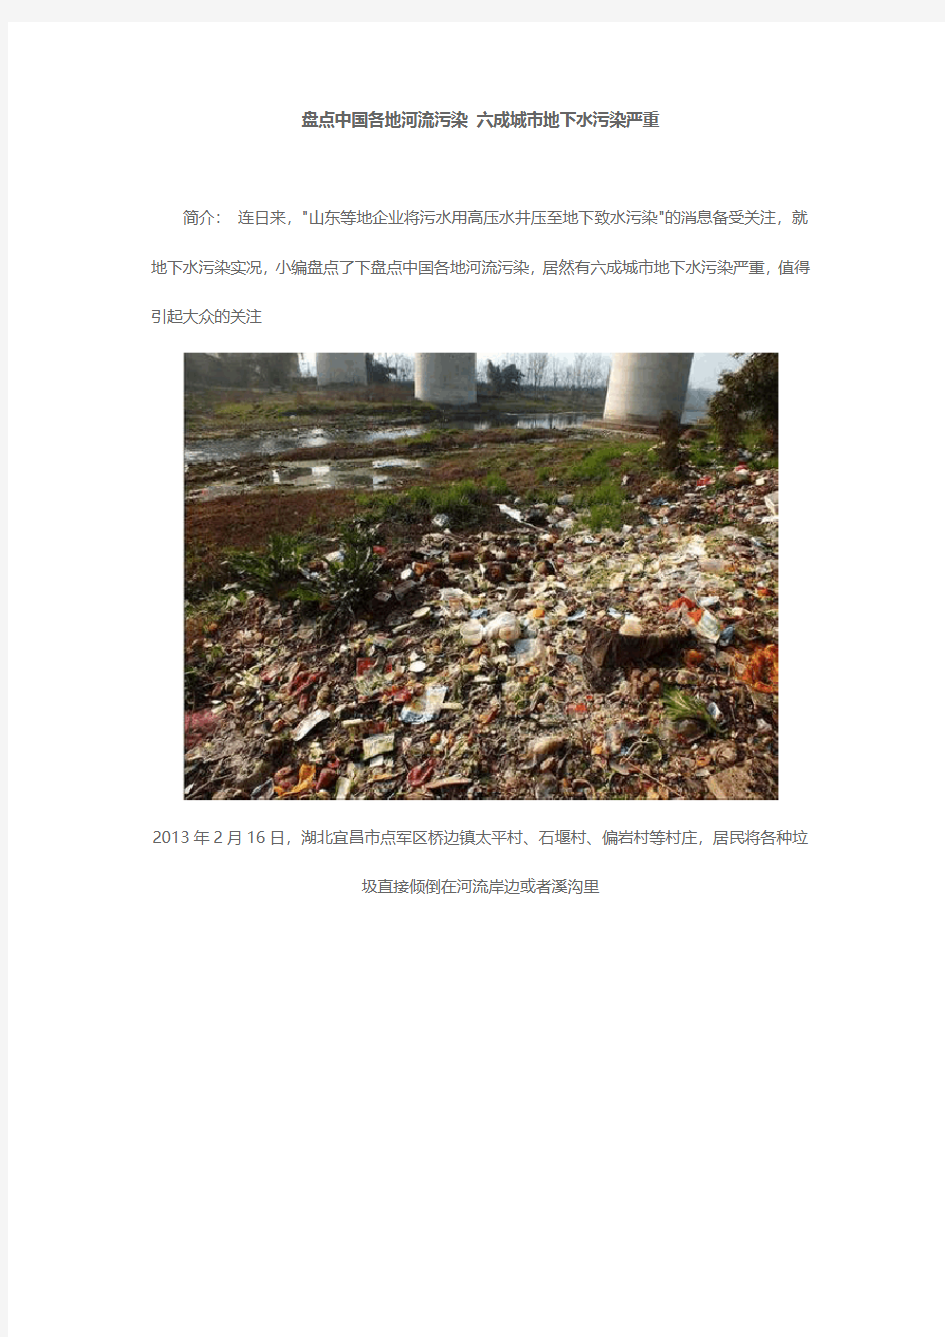 中国六成城市地下水污染严重